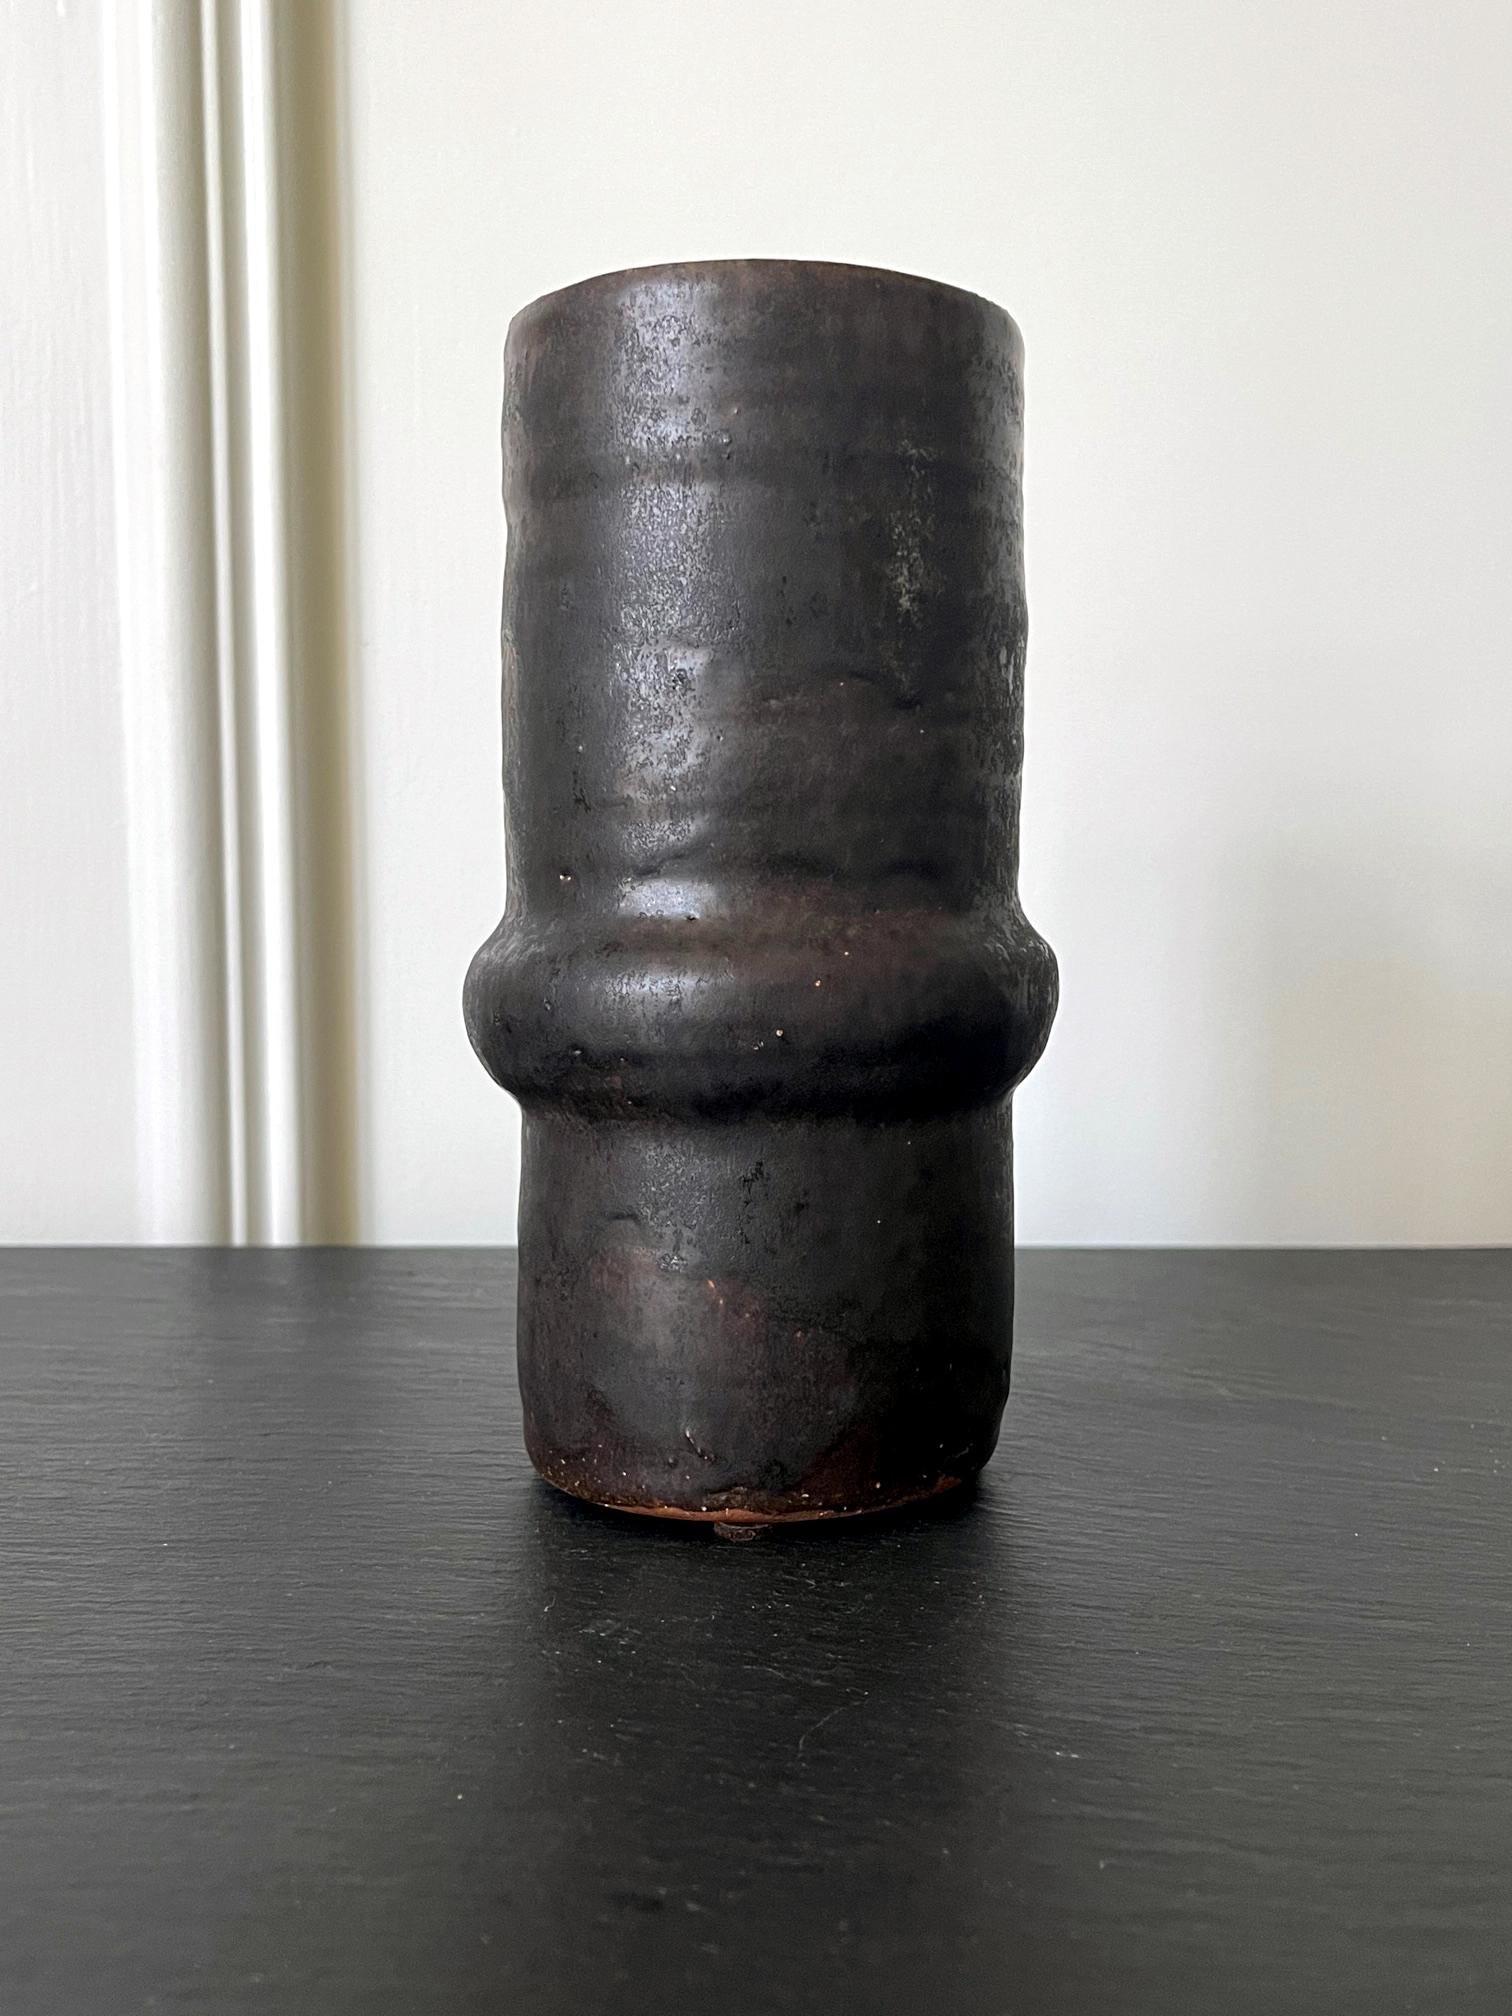 Vase en céramique de l'artiste et potier d'atelier américain Beatrice Wood (1893-1998). Cette pièce, datant des années 1980, a une forme de colonne avec un petit anneau bombé à mi-corps. Très géométrique et moderne dans son aspect minimaliste, le